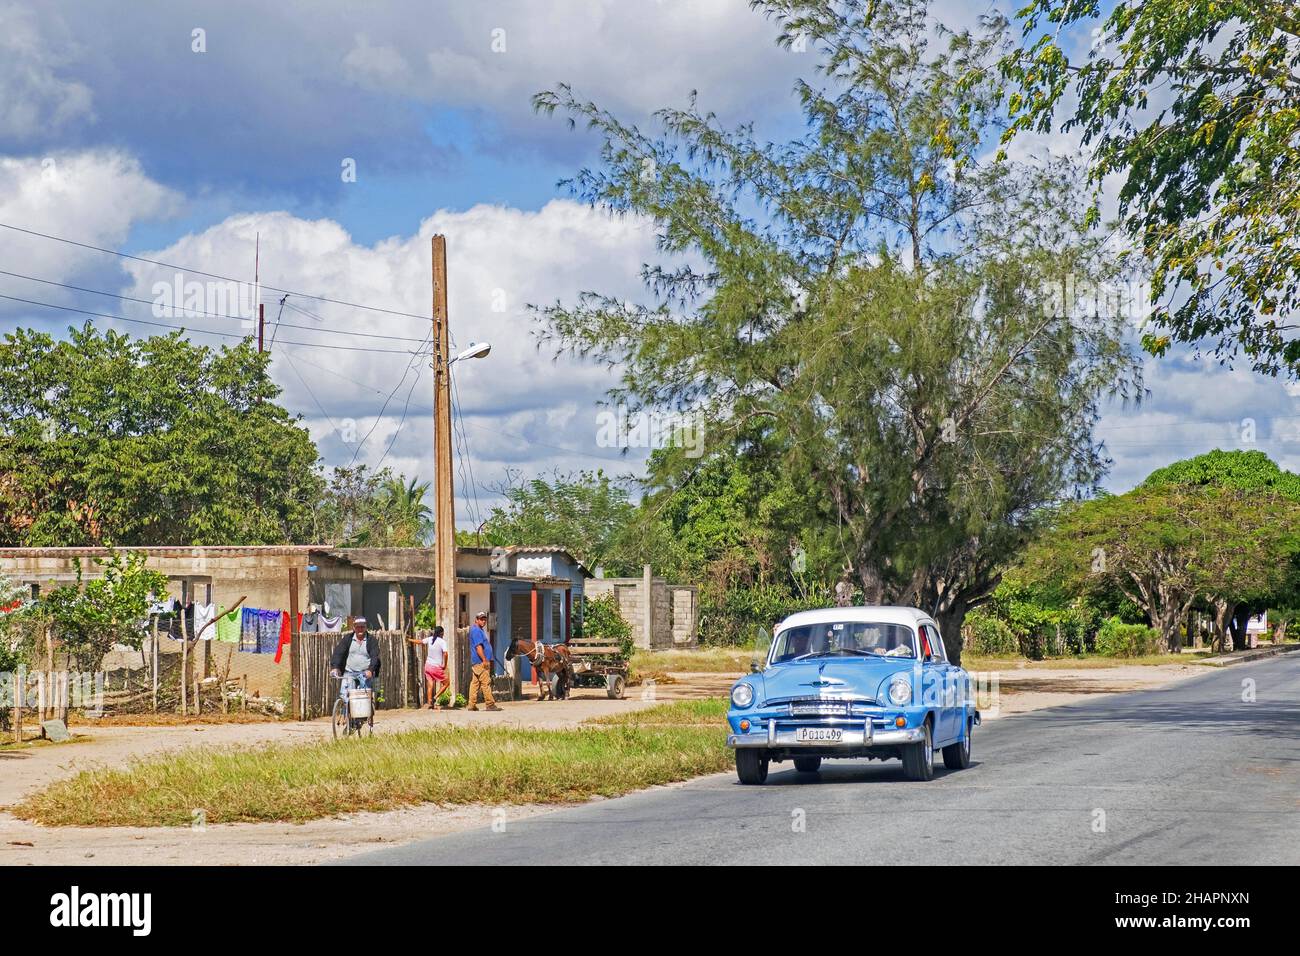 Auto d'epoca americana classica che guida sulla Carretera Central / CC / Central Road, autostrada ovest-est che copre la lunghezza dell'isola di Cuba, Camagü Foto Stock